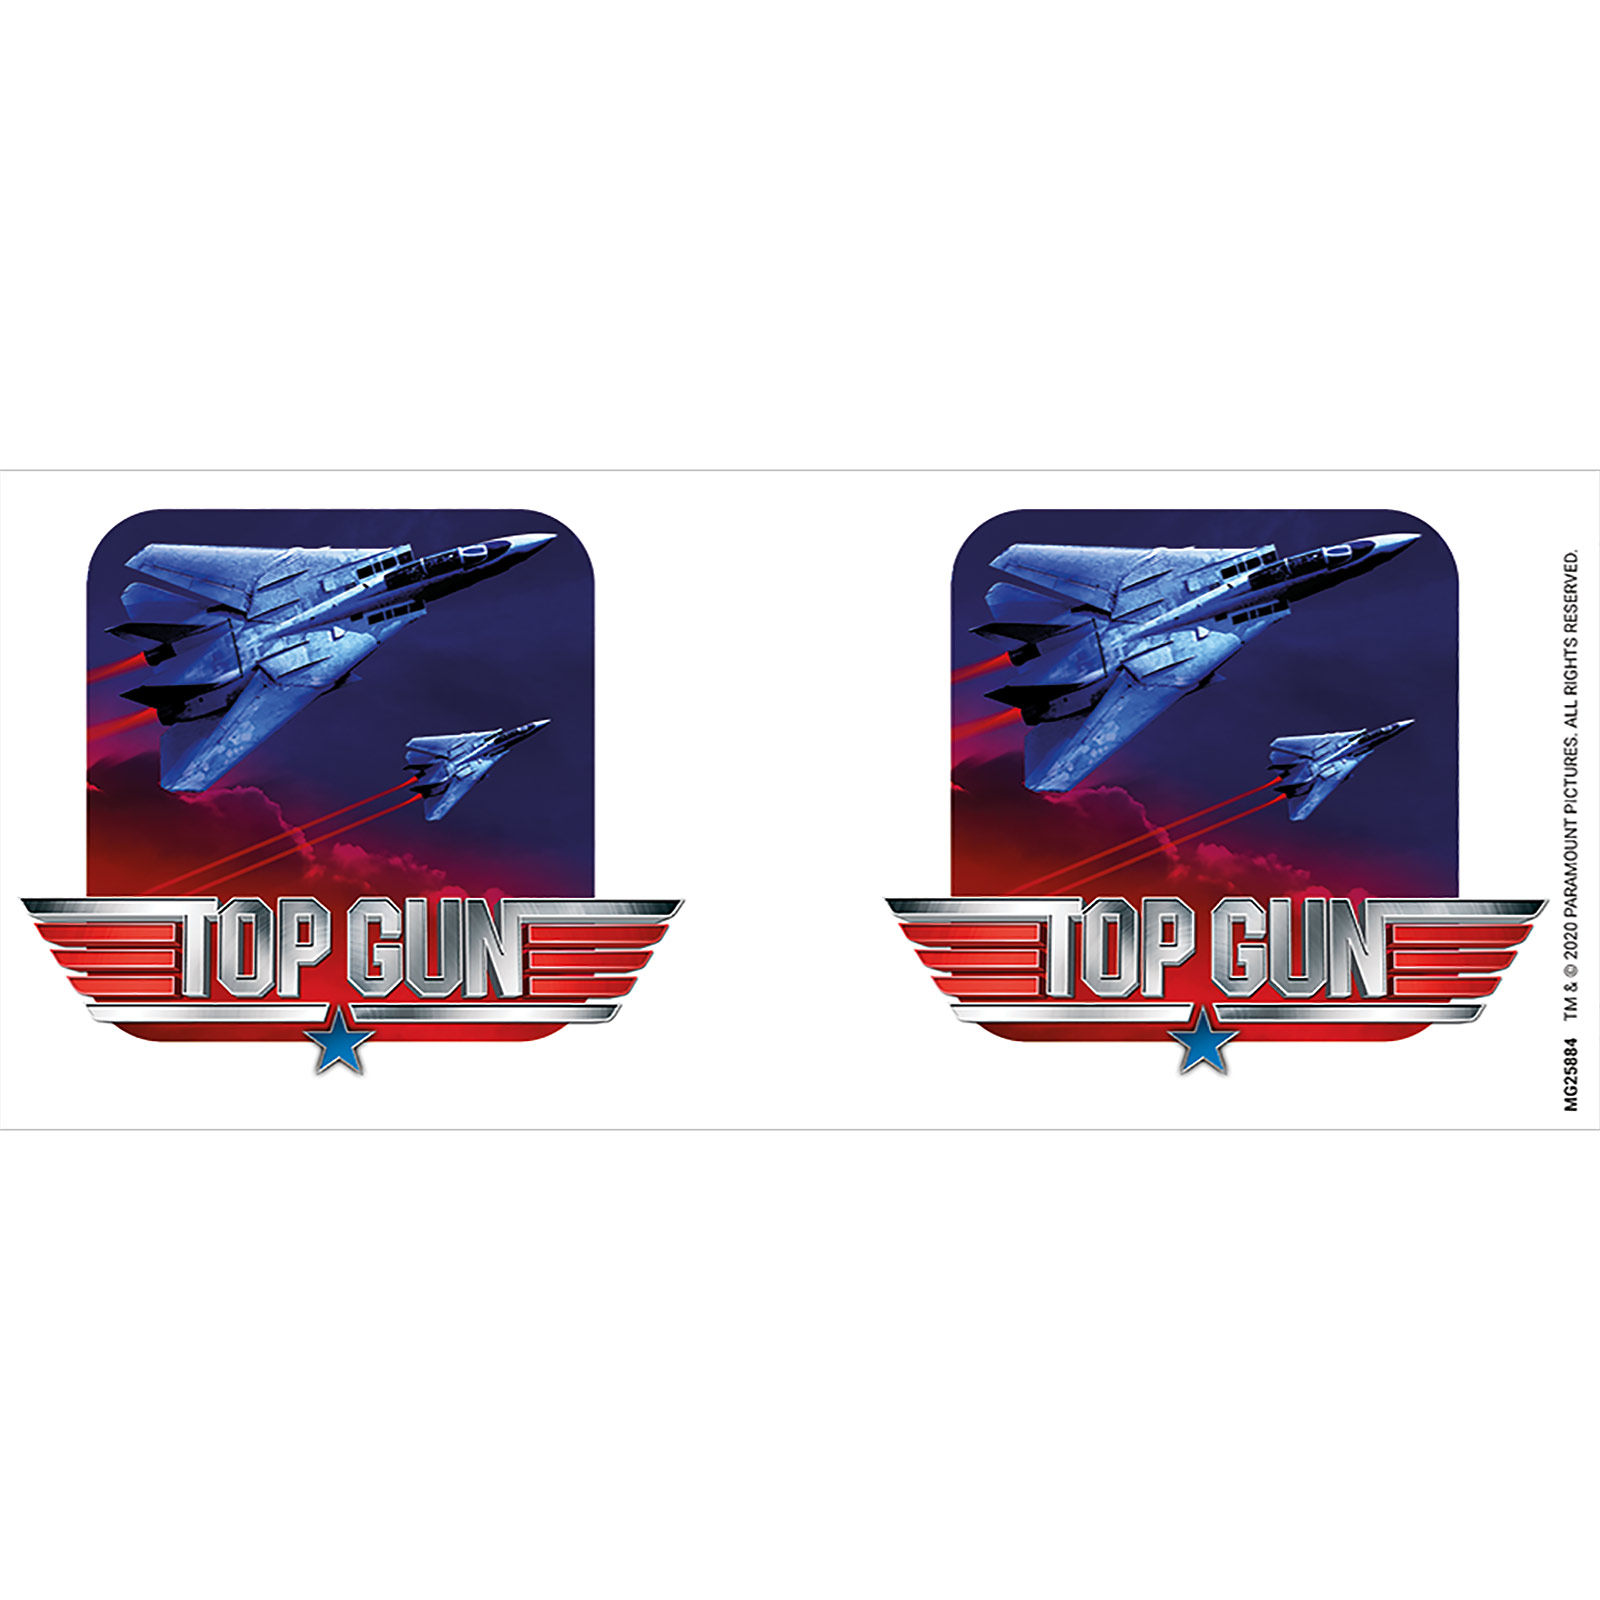 Top Gun - Tasse Fighter Jets